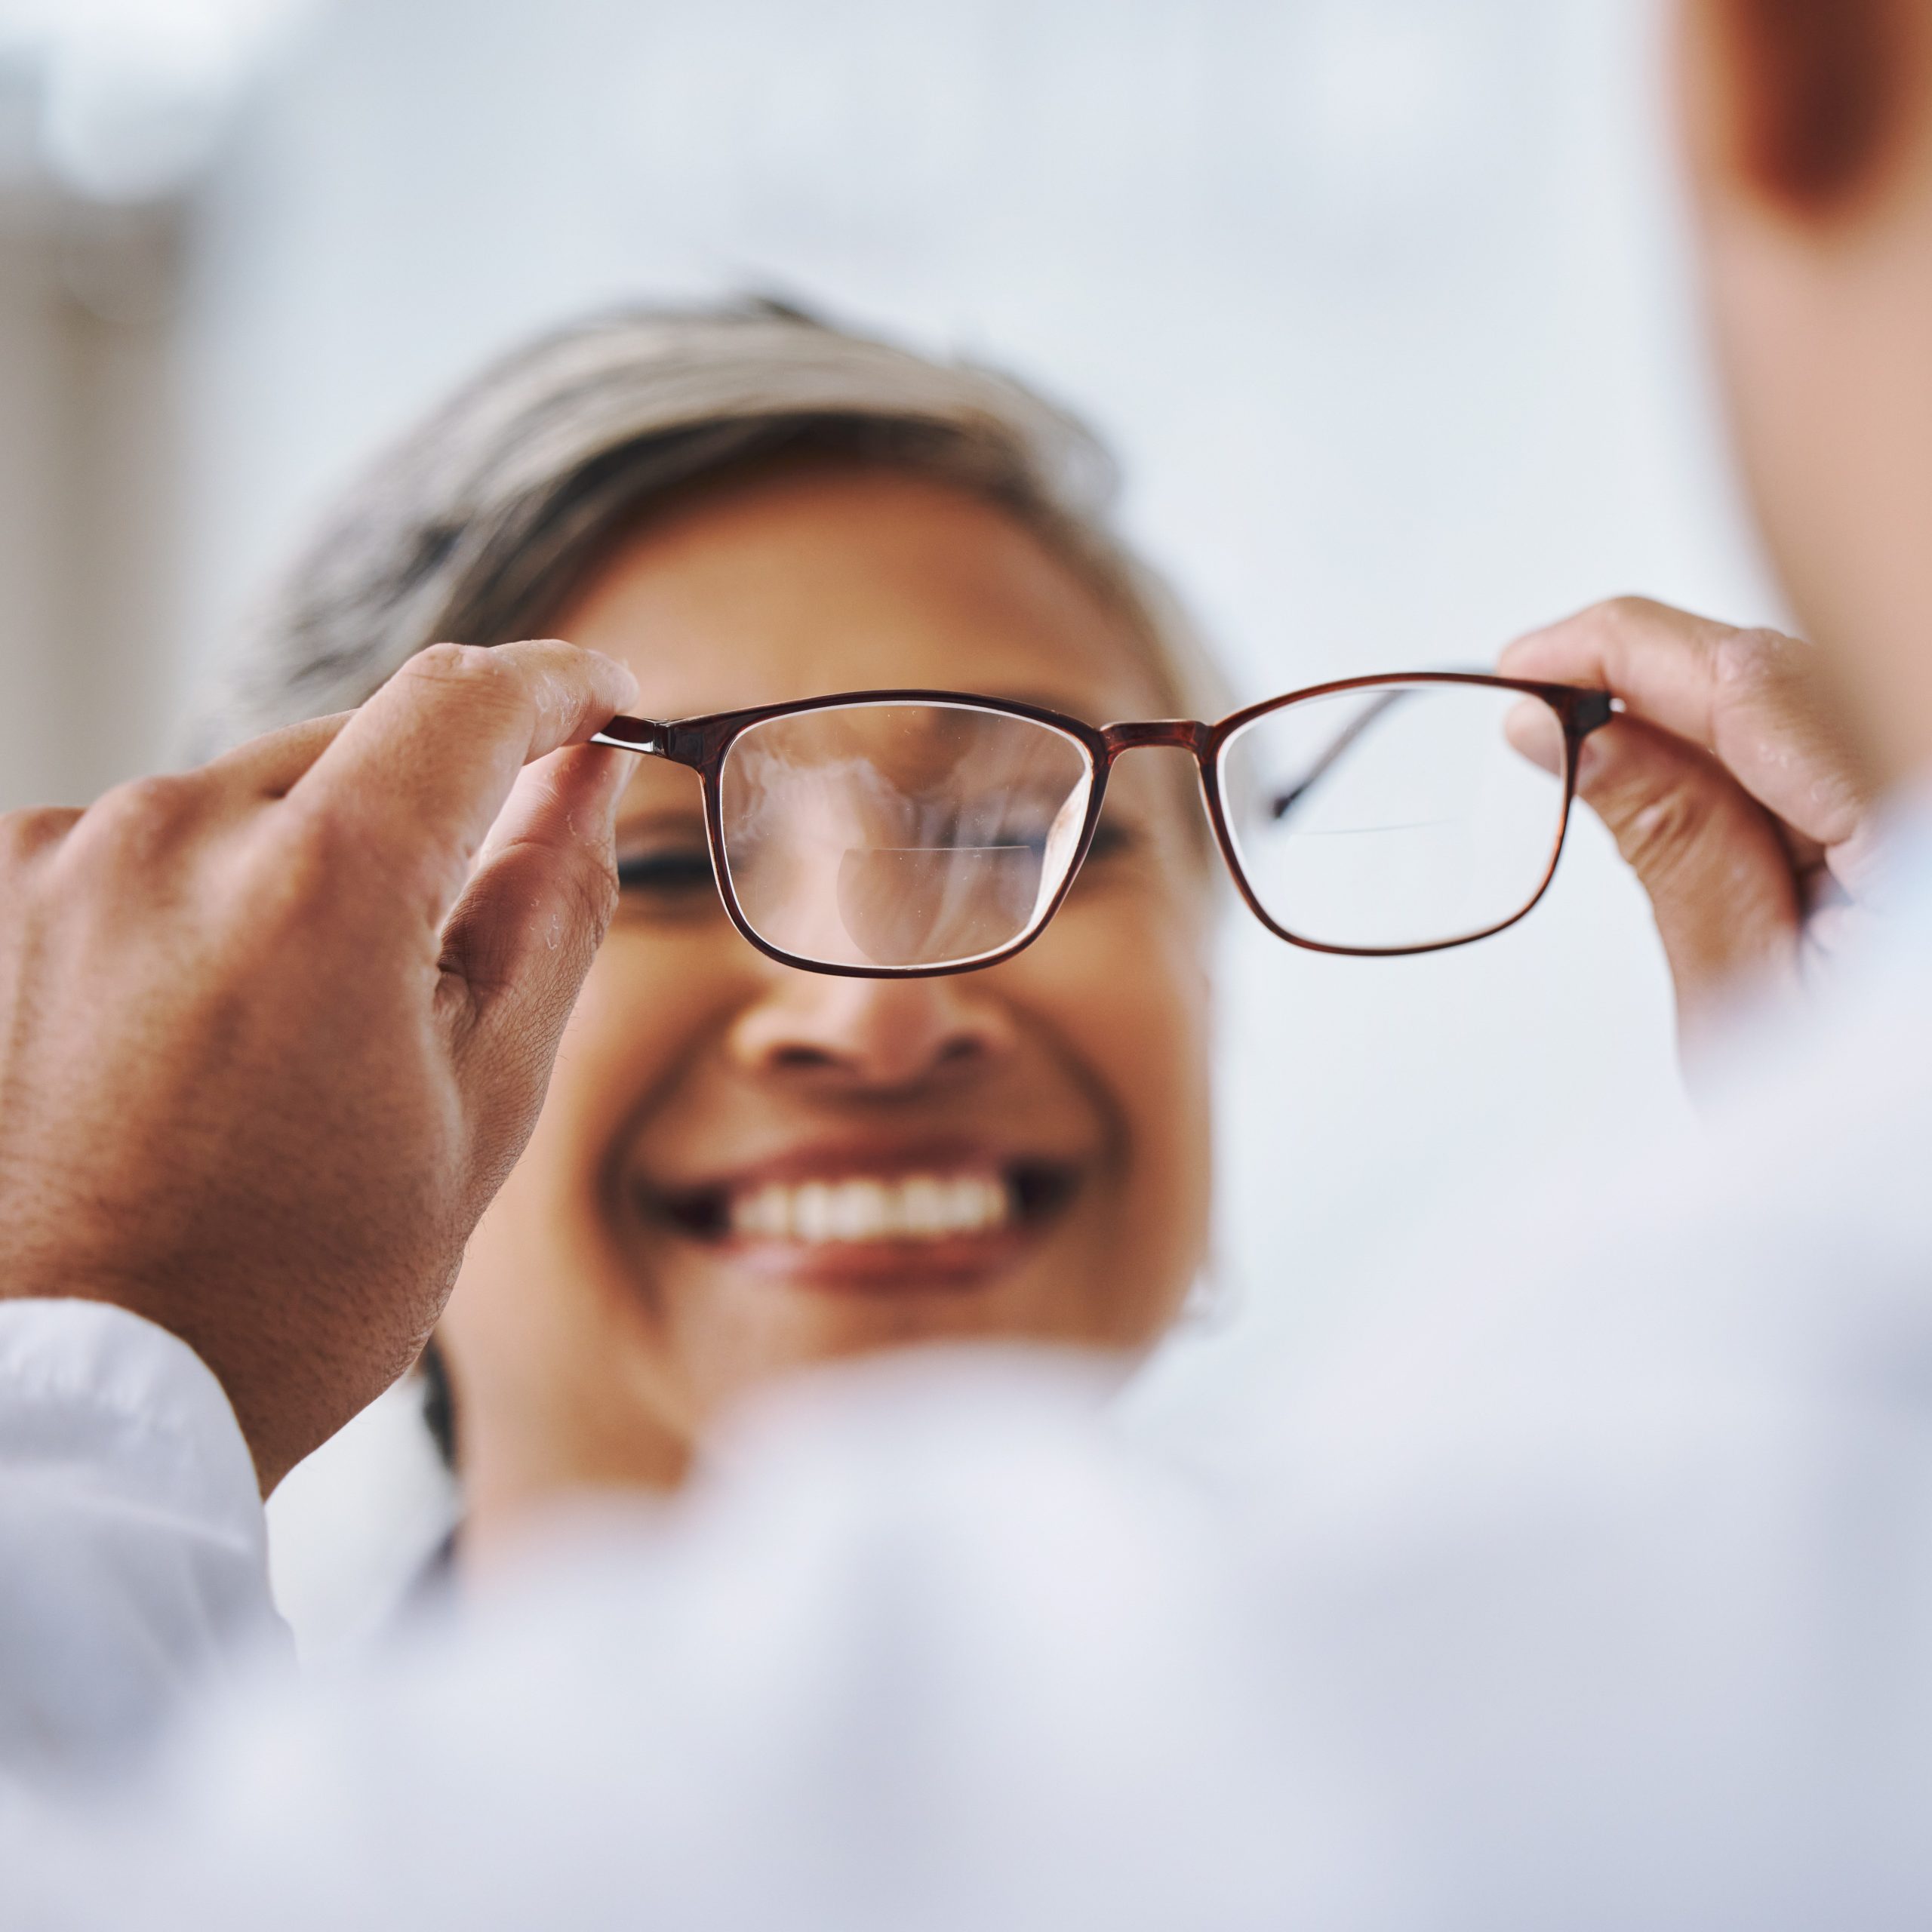 Optometrist putting on eyeglasses